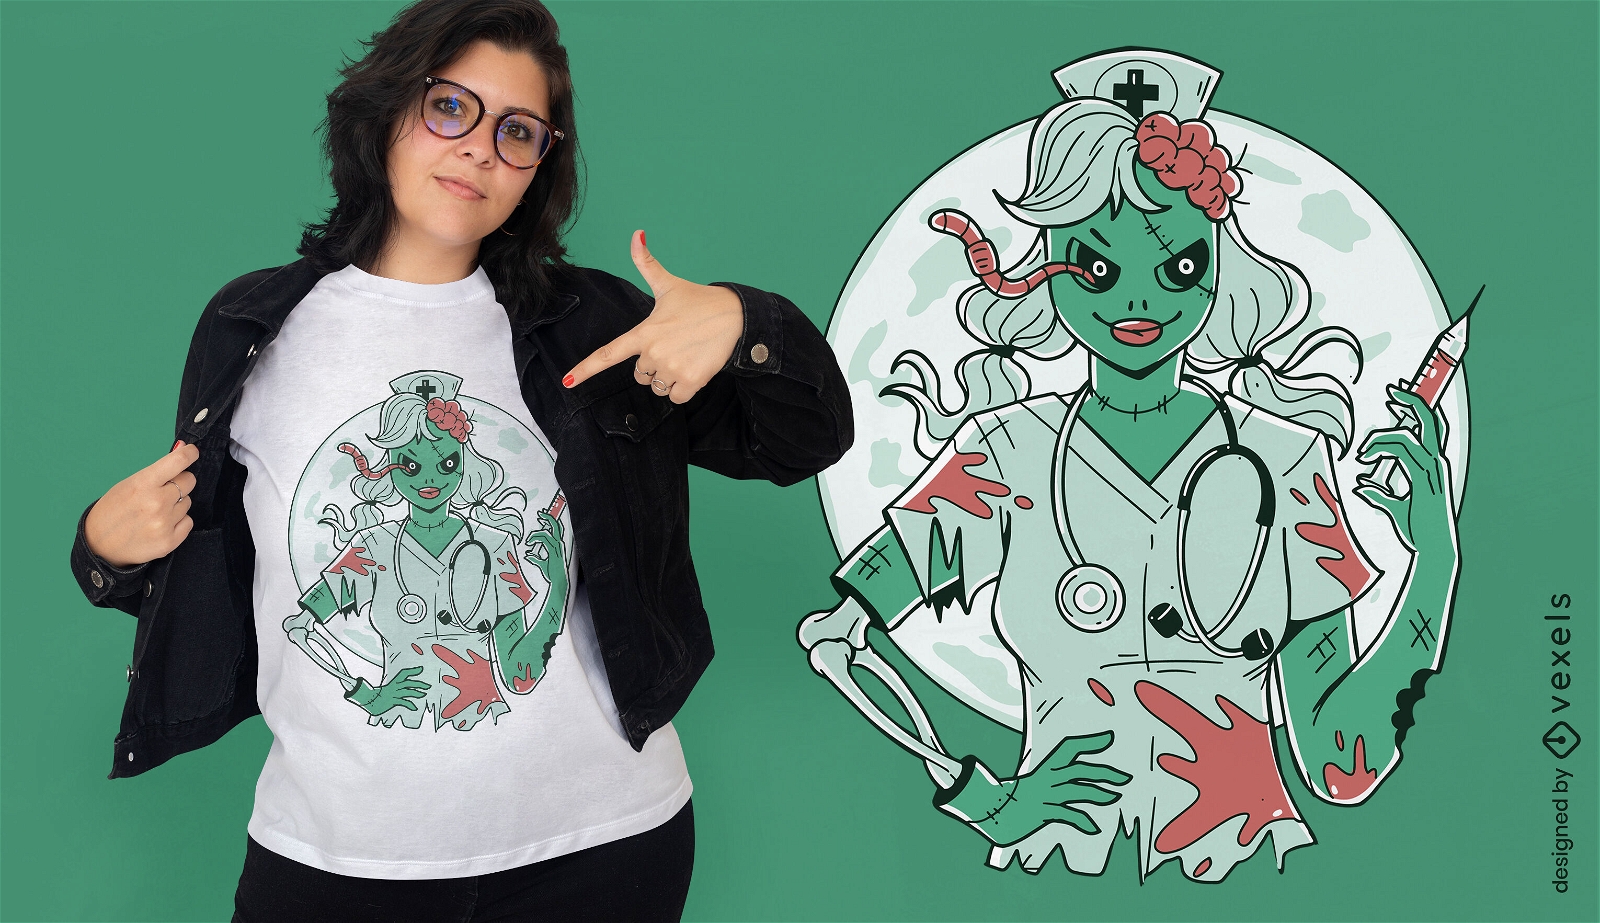 Zombie nurse t-shirt design